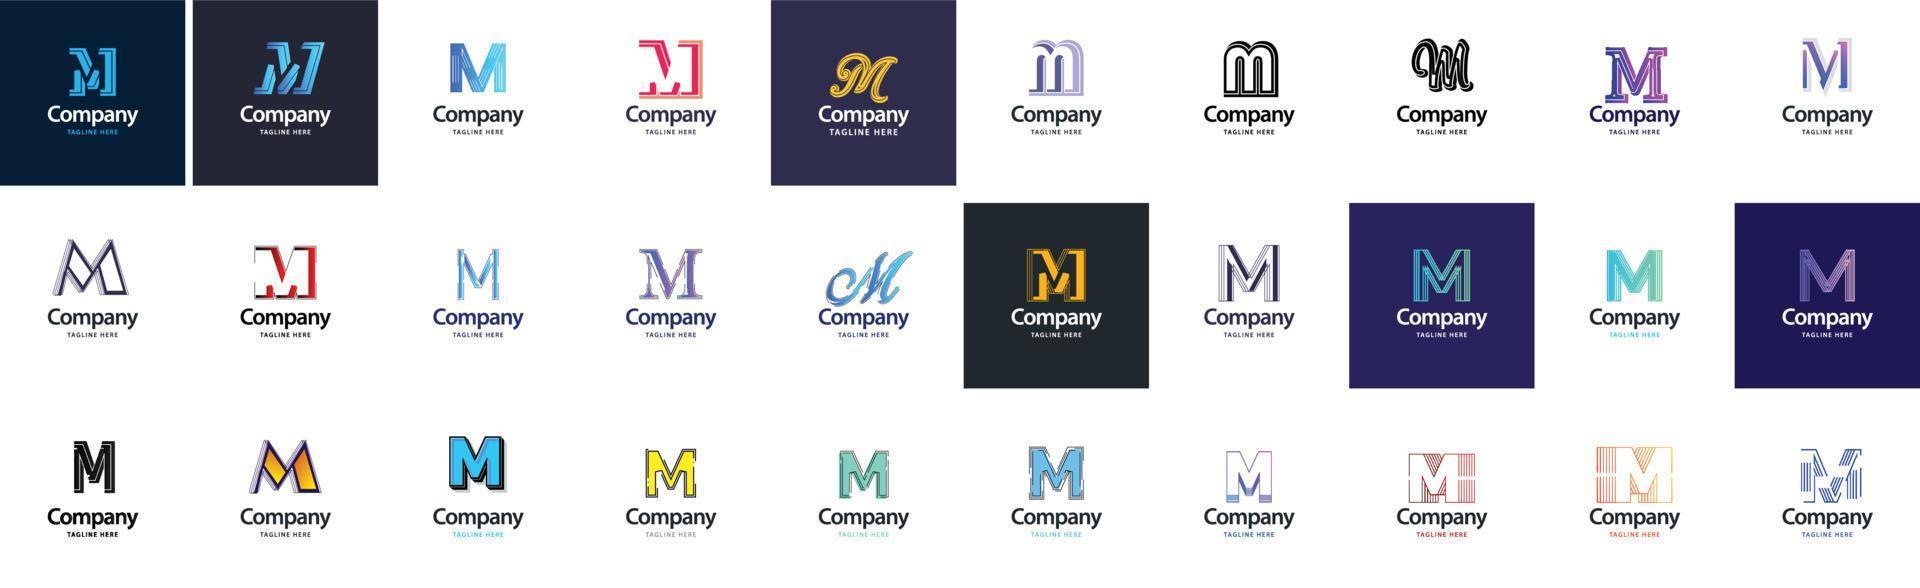 m-Logo-Sammlung. 30 Business-Logo-Sammlung für Finanzunternehmen oder Designagenturen. vektormarkenillustration vektor